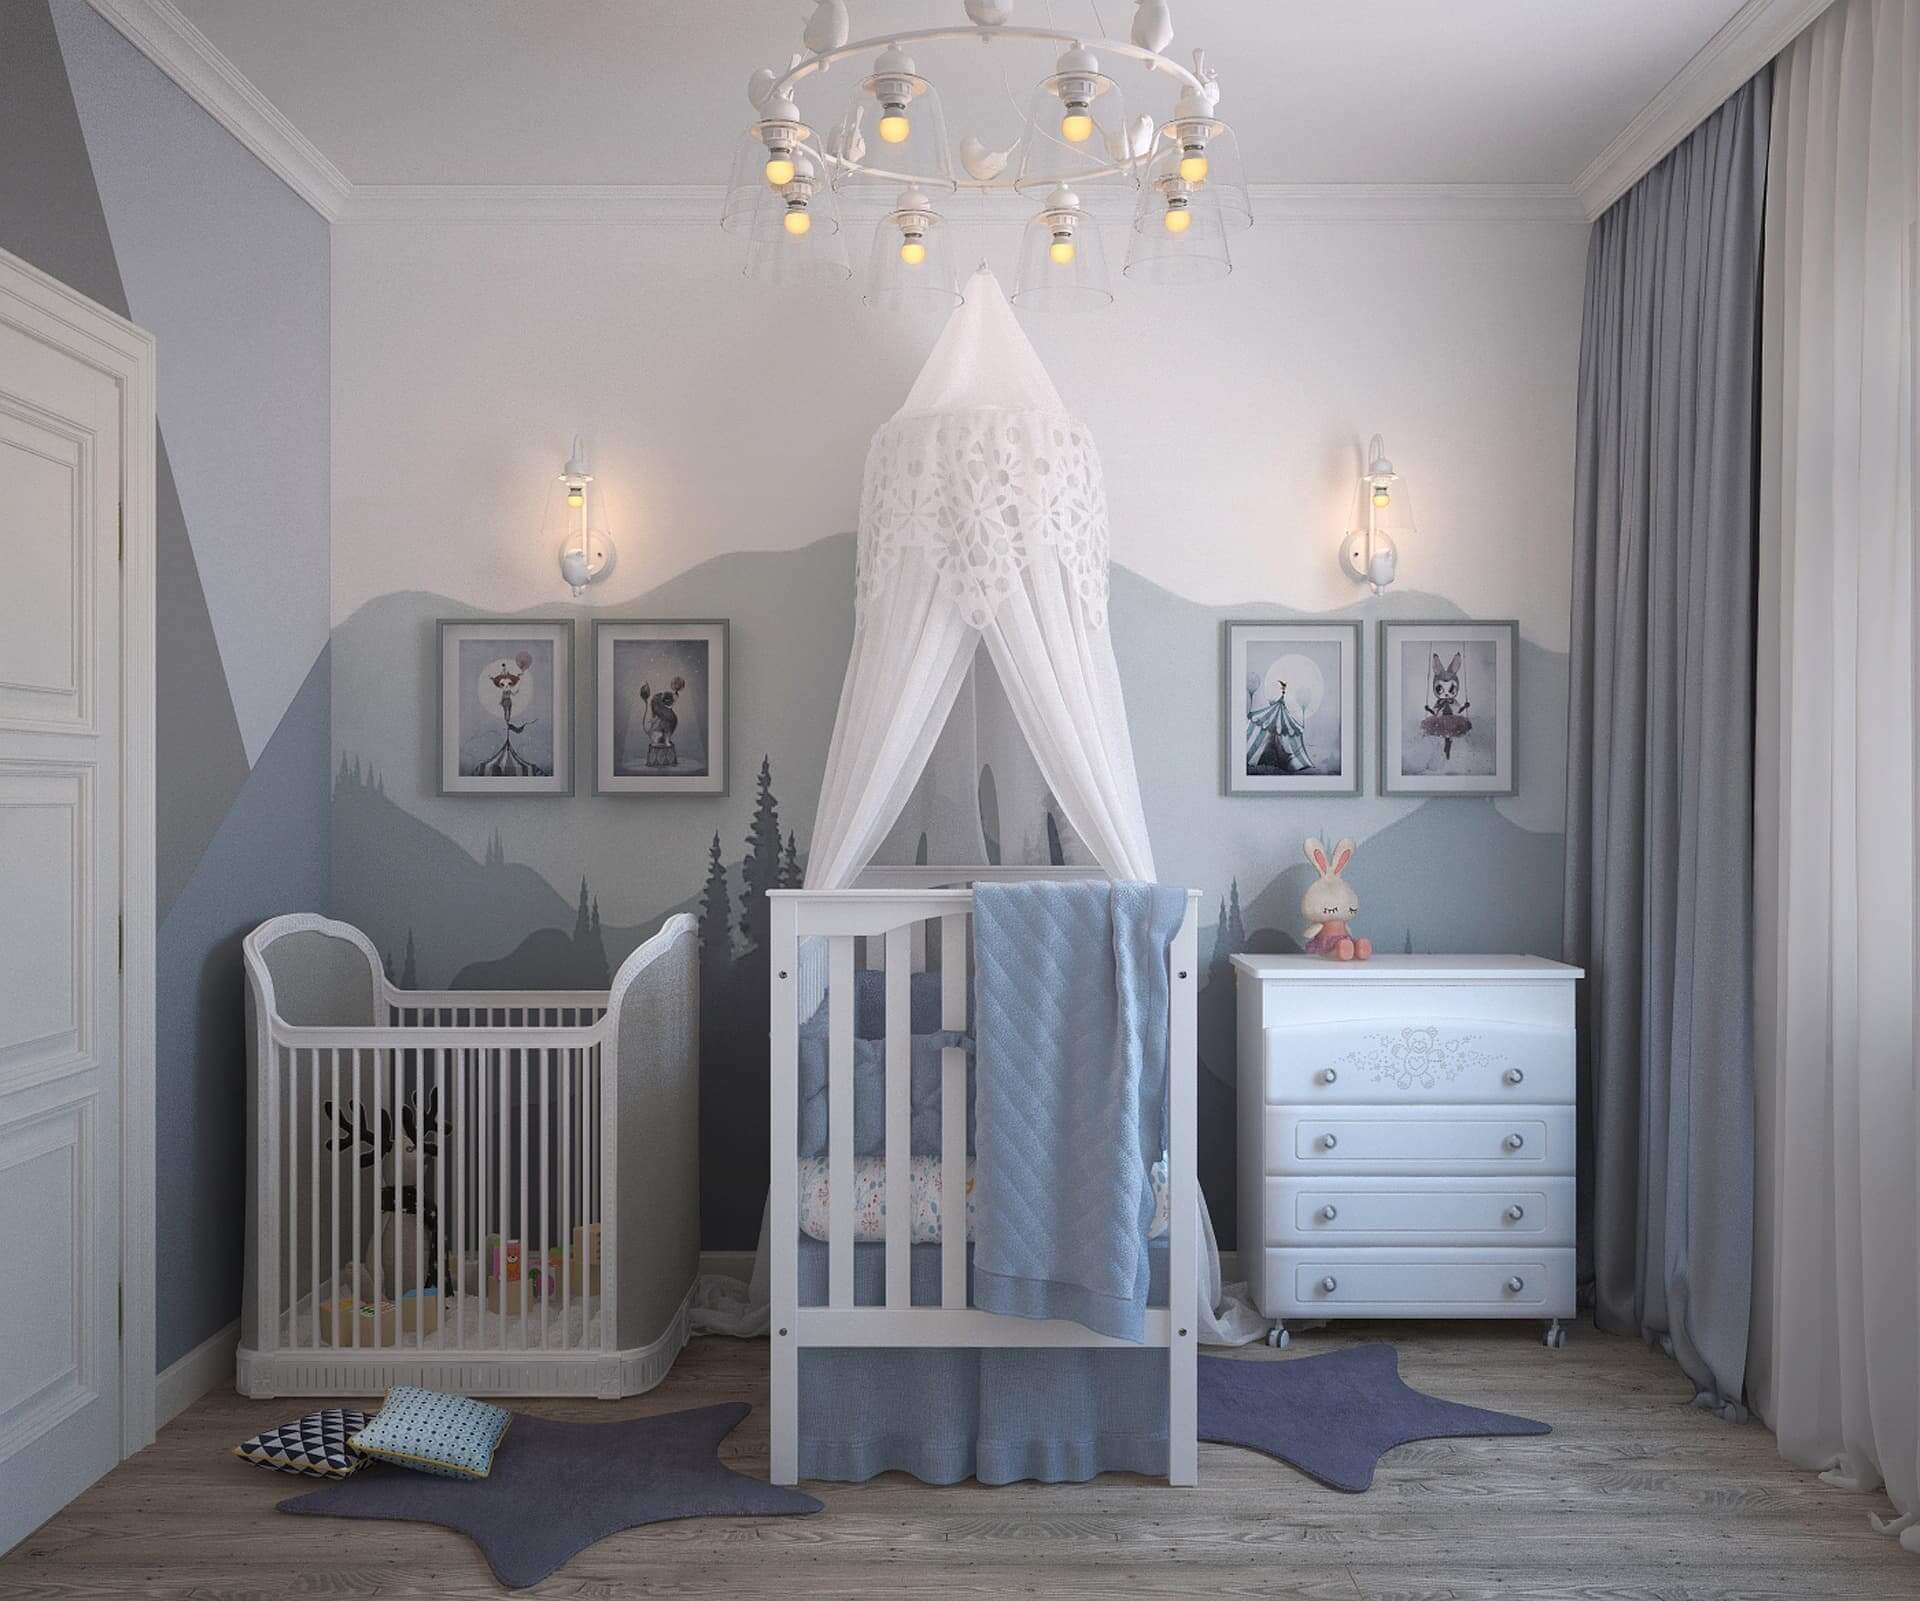 Alabama Afslachten Aubergine 3 gouden tips voor de inrichting van je babykamer - Homeandgarden.nl